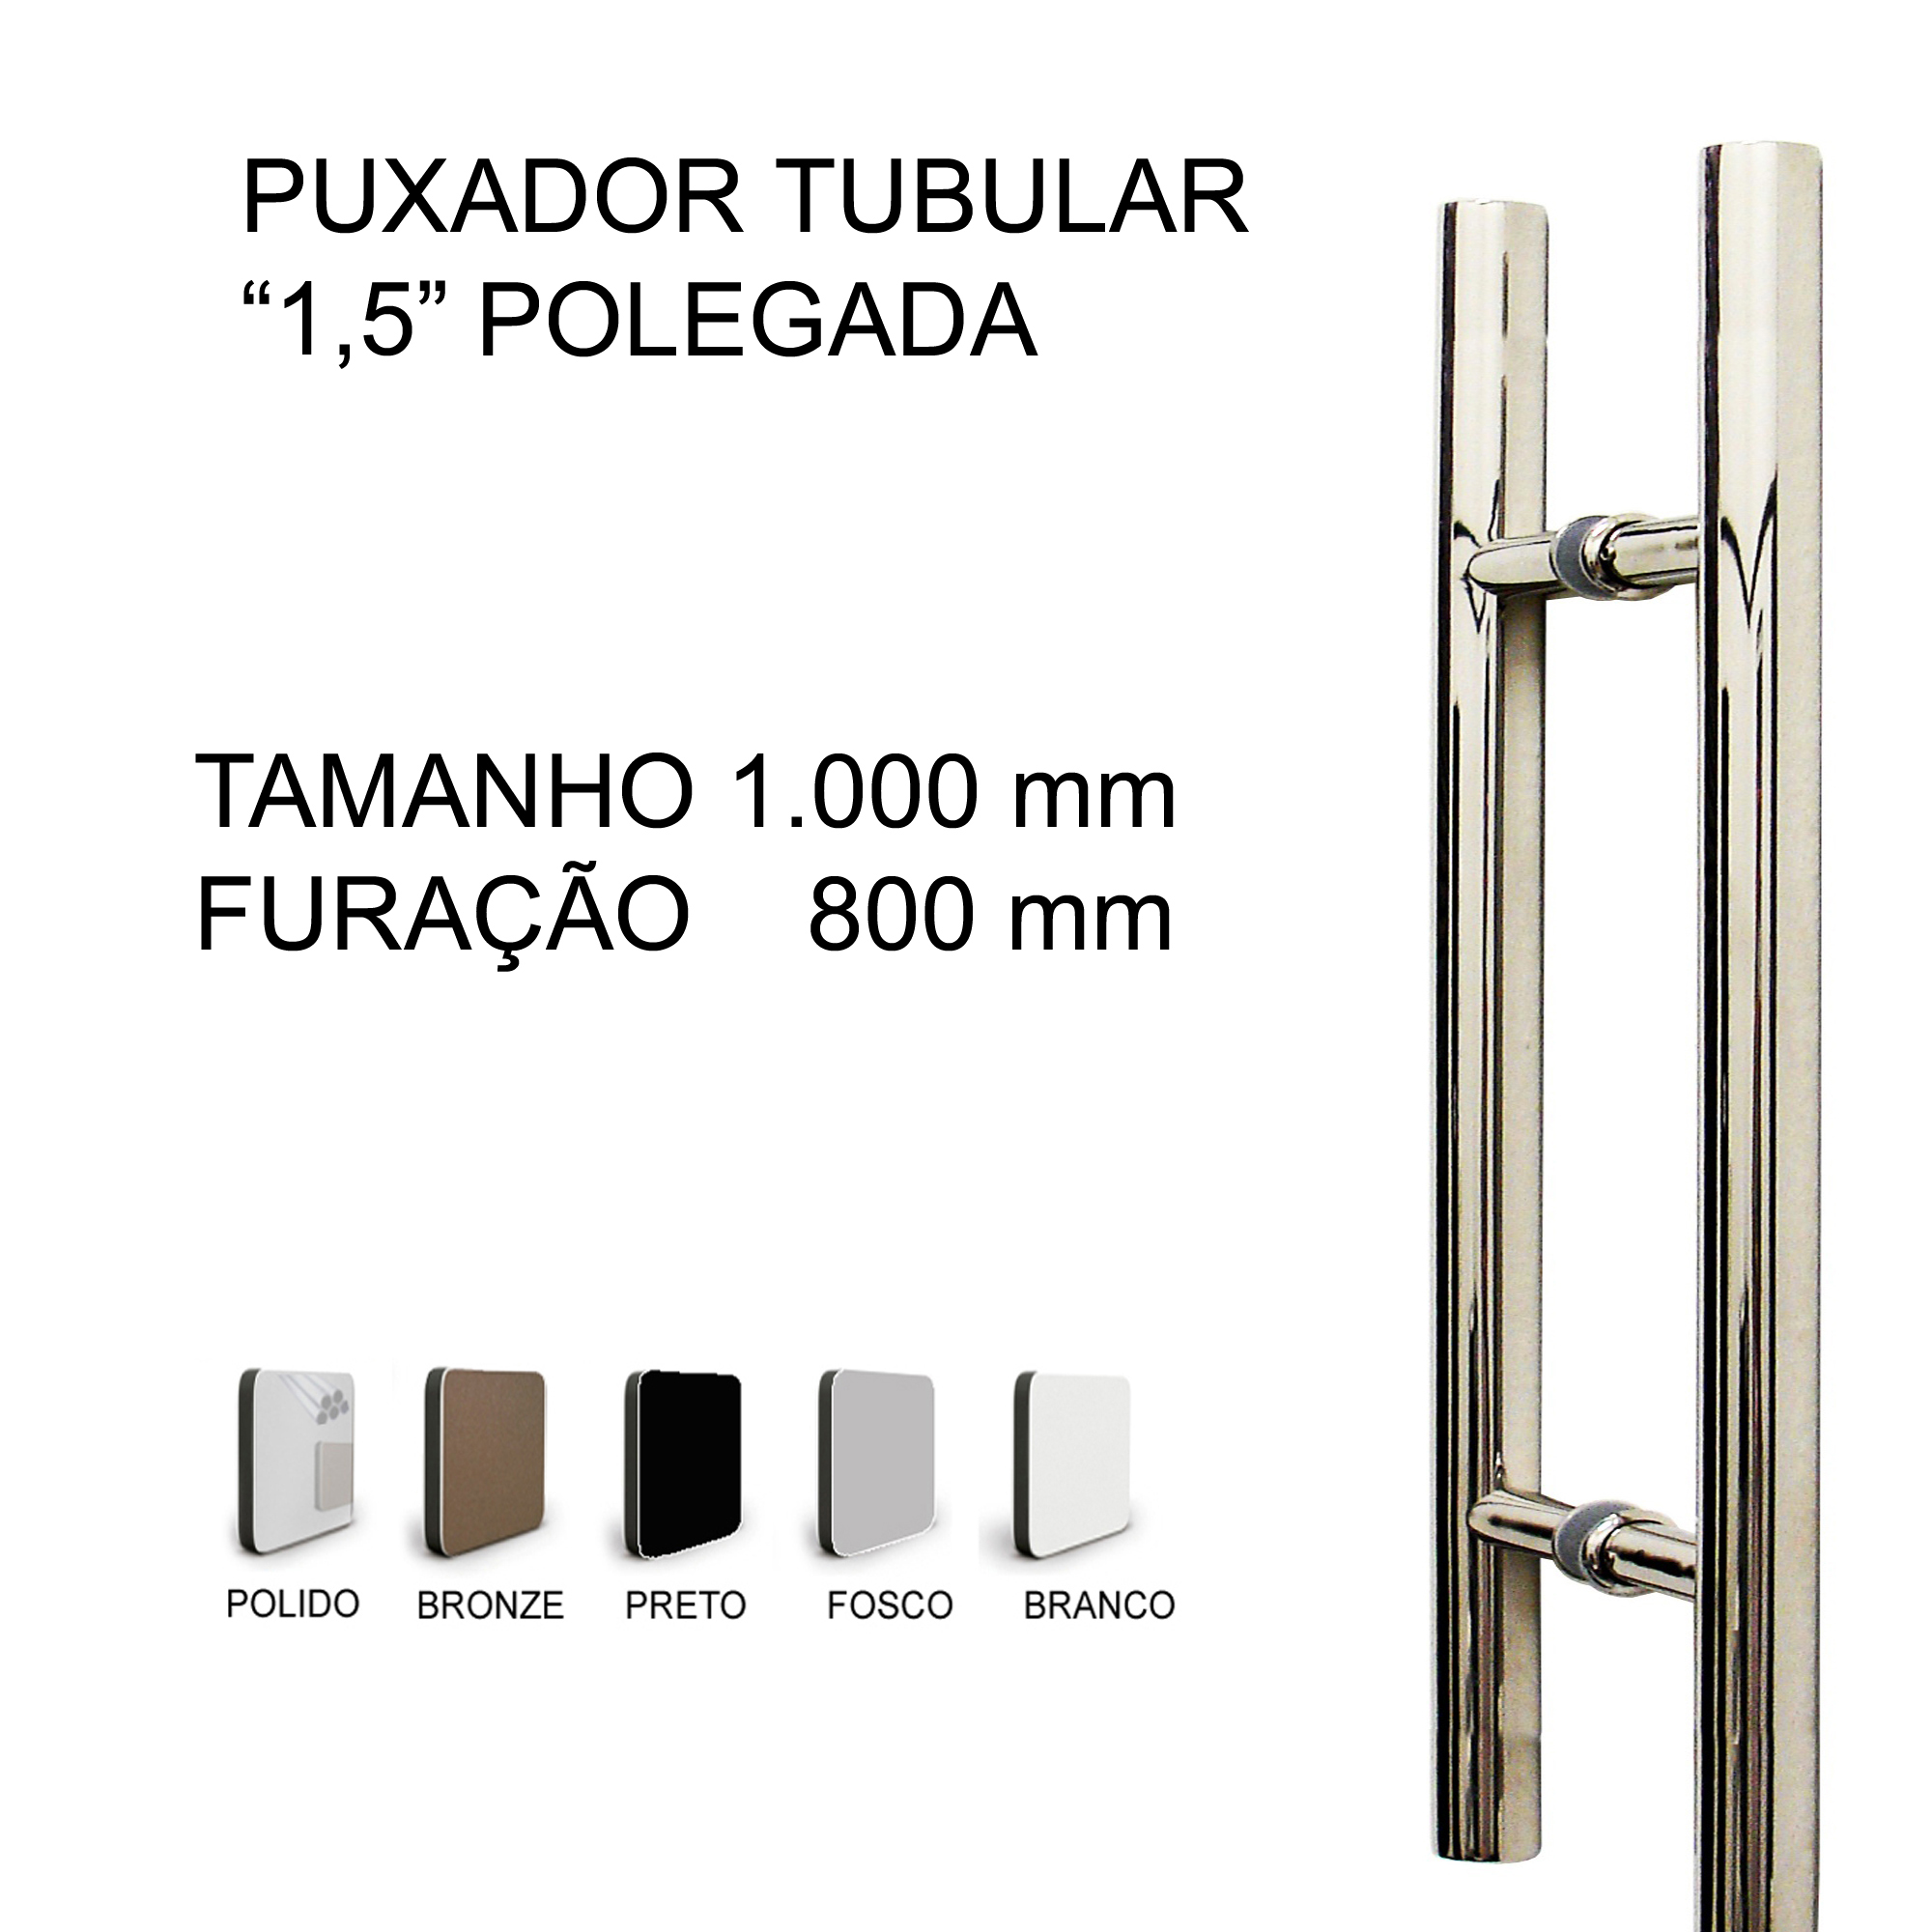 PUXADOR TUBULAR 1000 X 800 (mm)